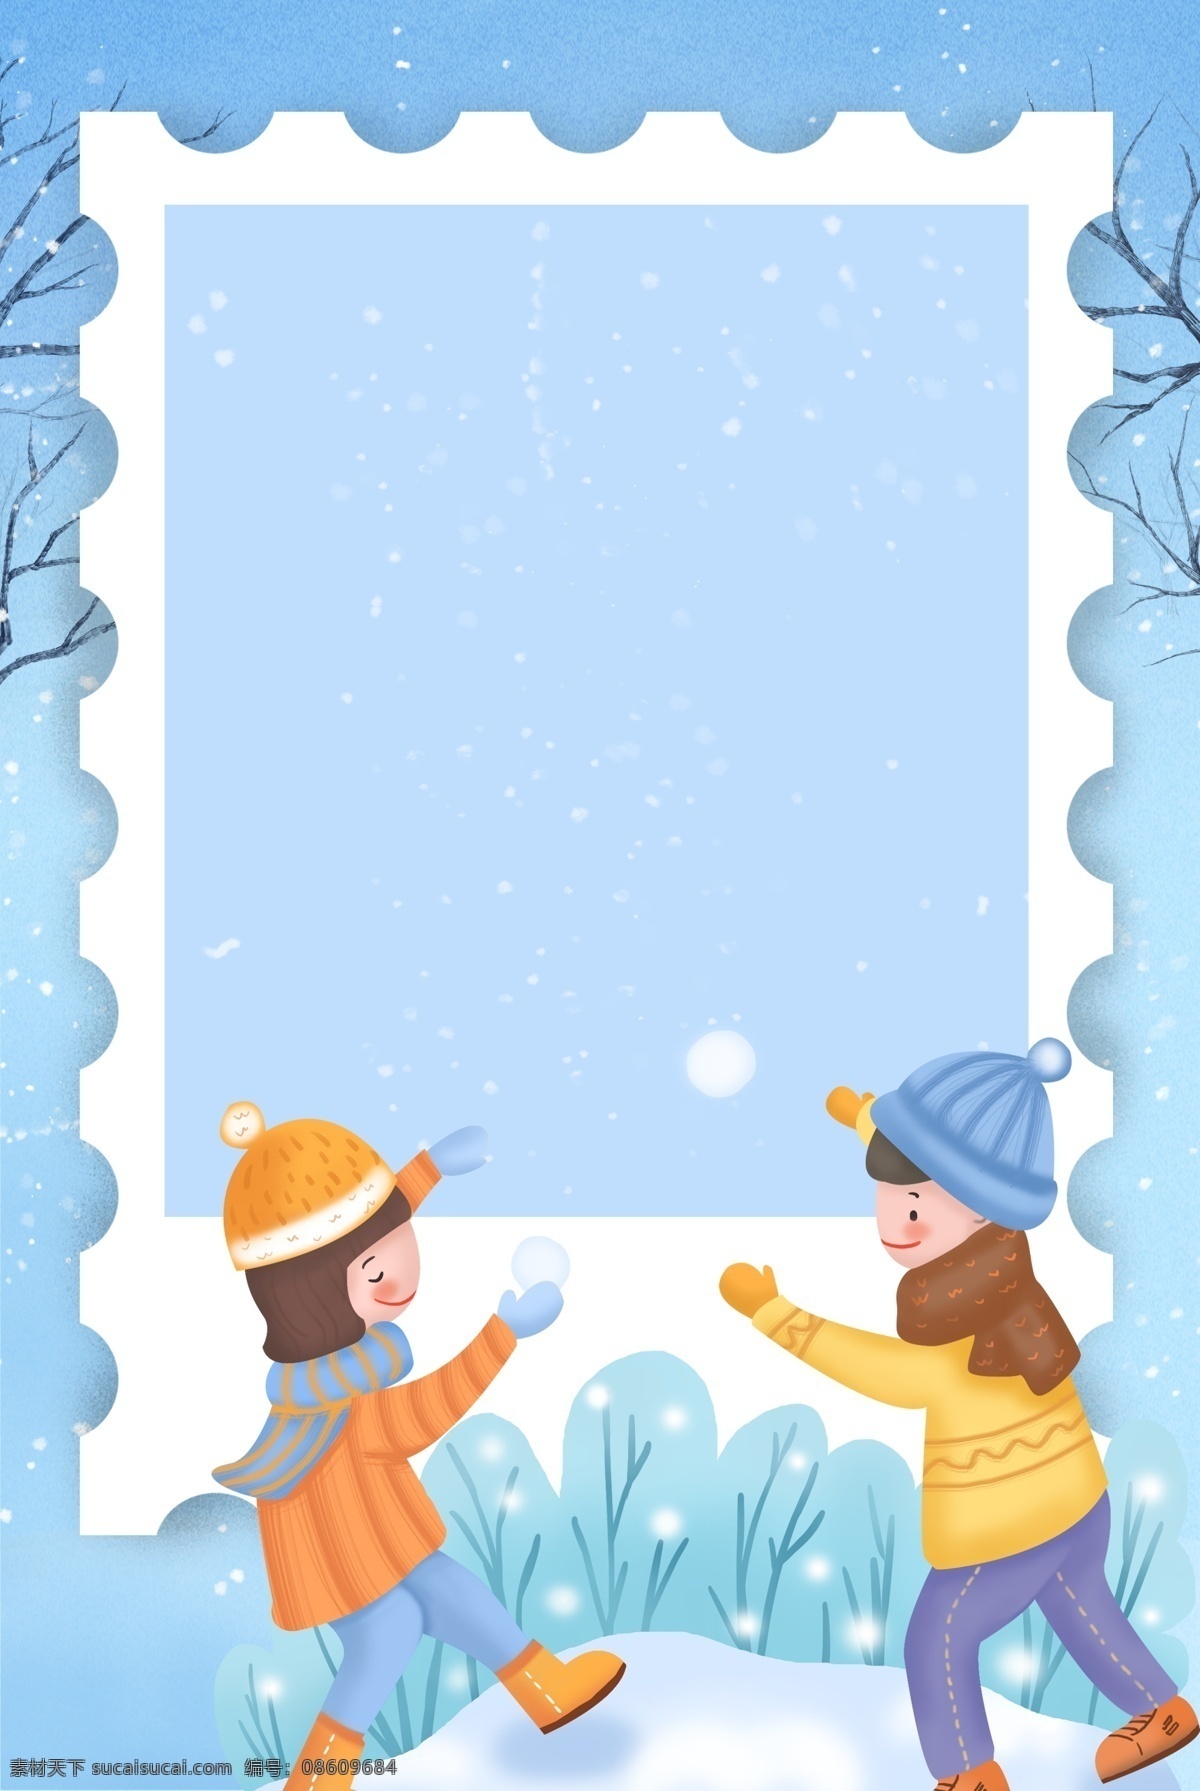 冬季 一月 你好 海报 背景 蓝色 打雪仗 开心 快乐